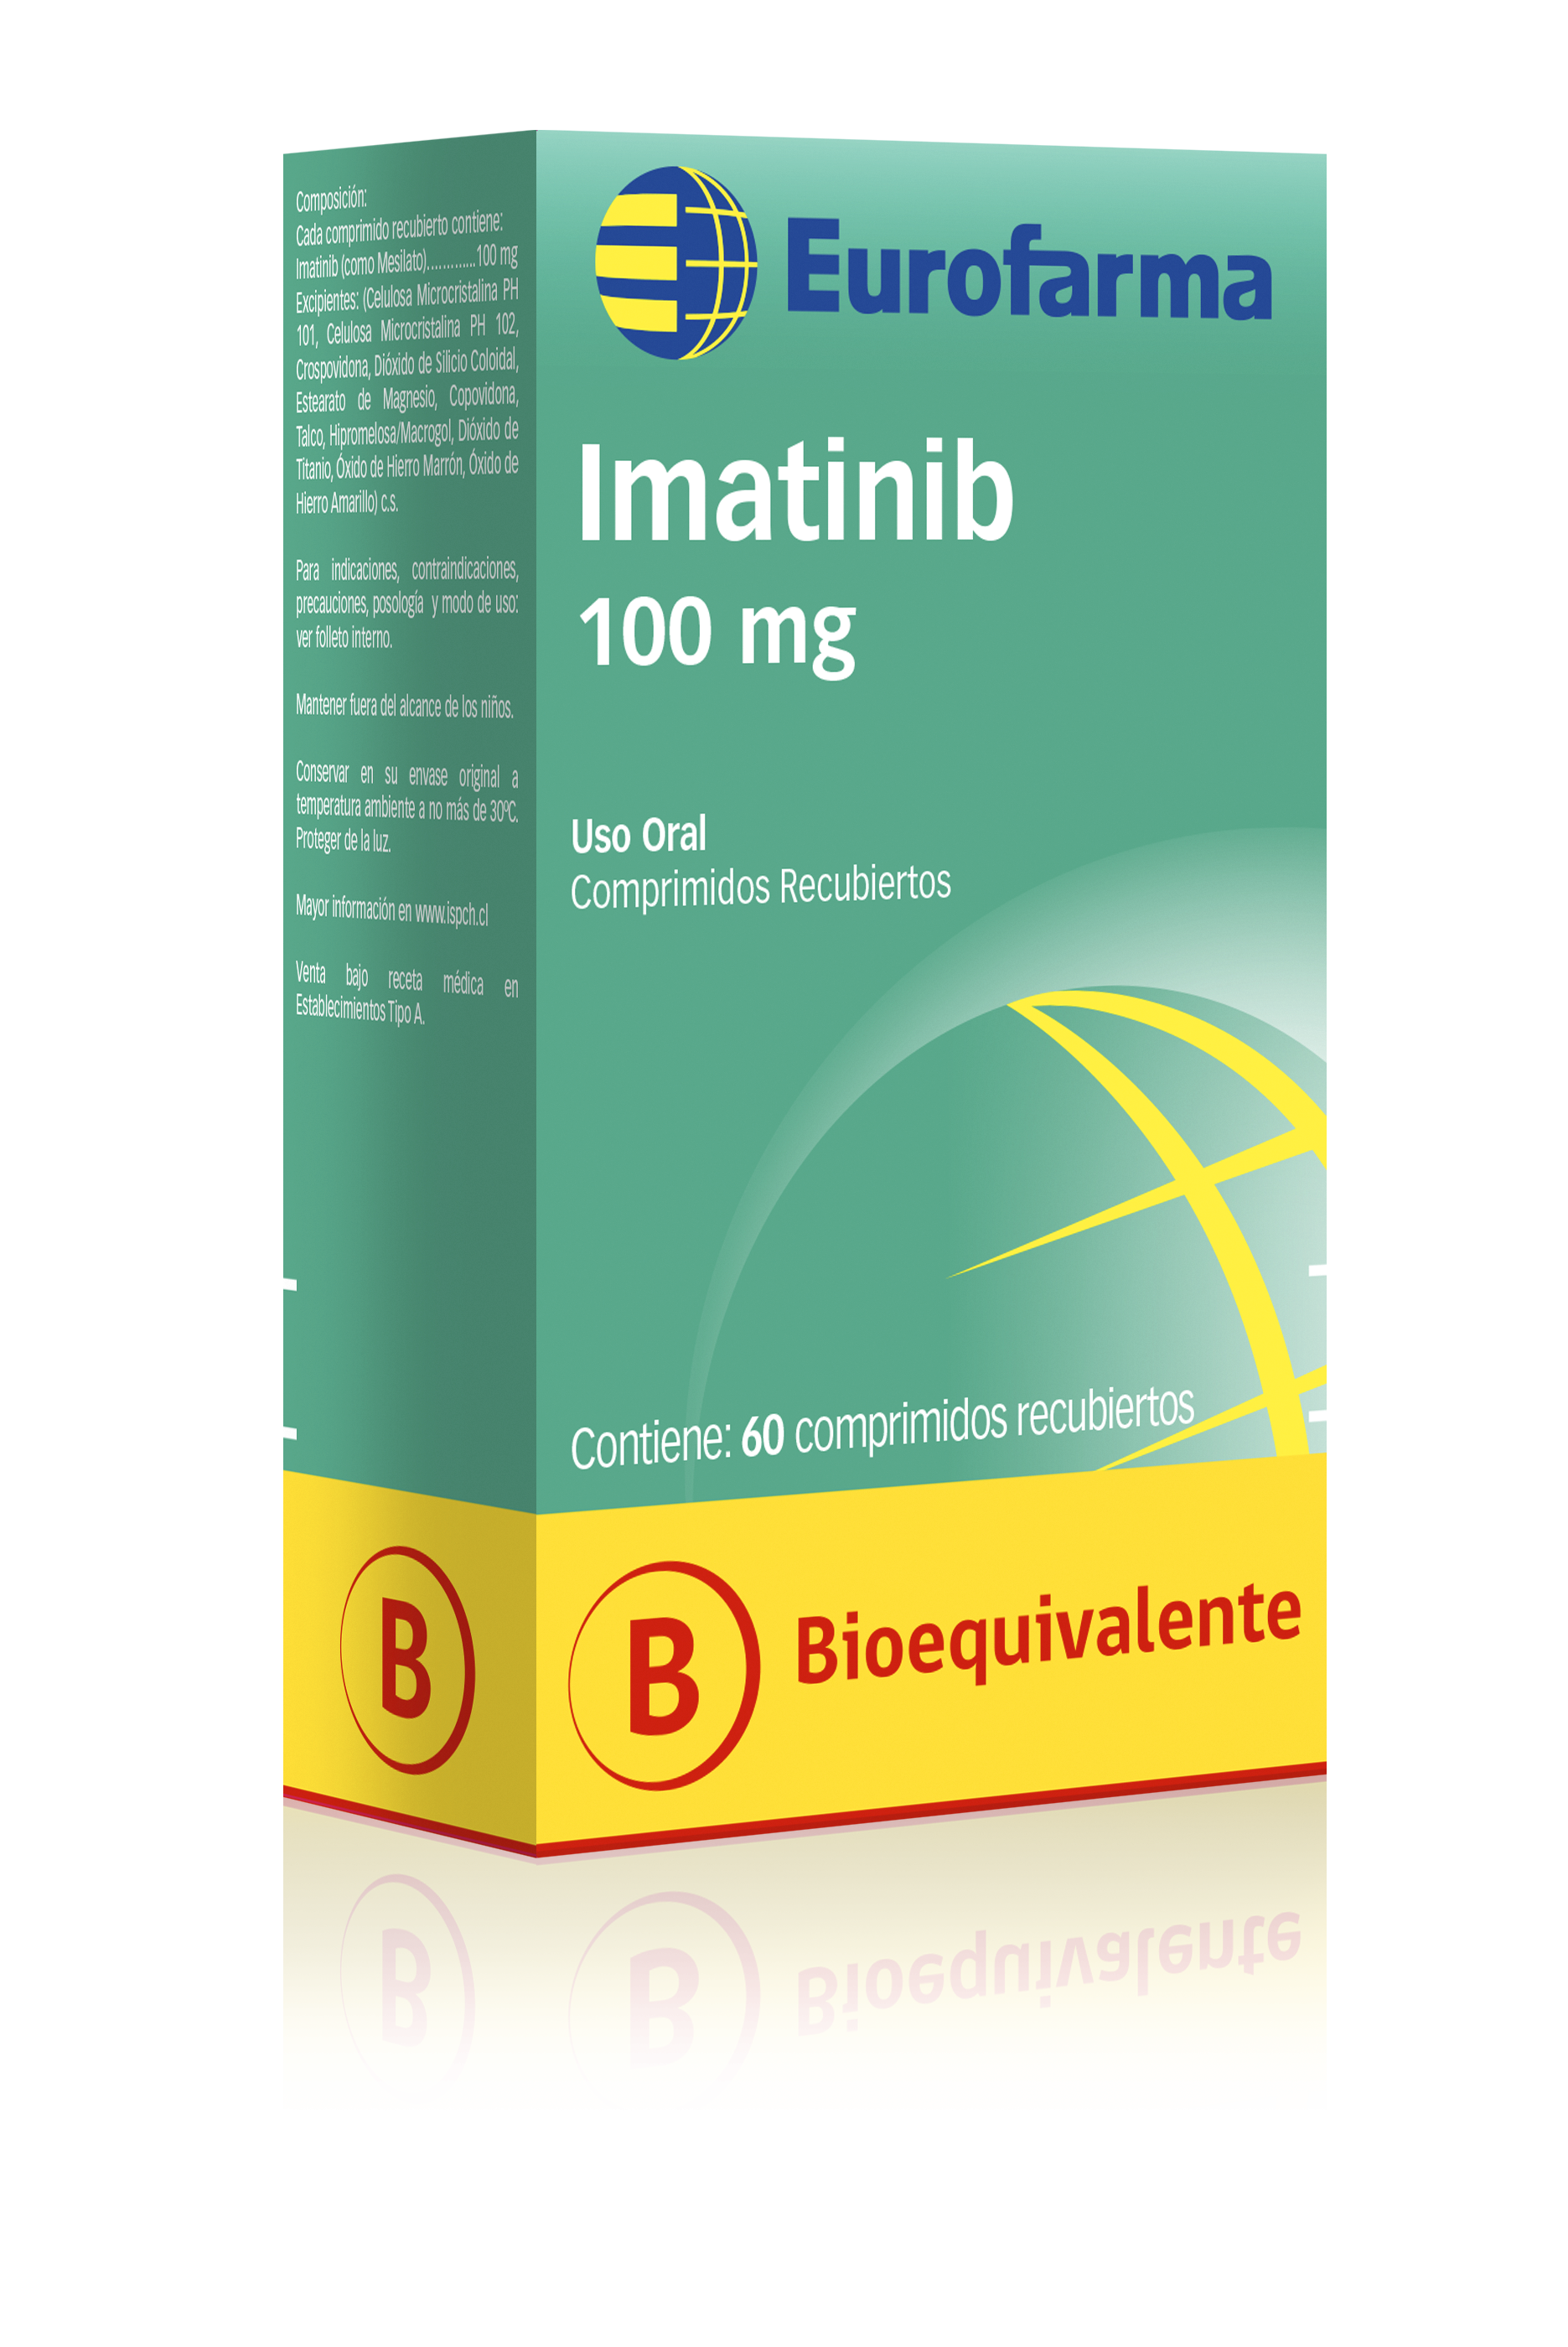 Imatinib 100 mg.